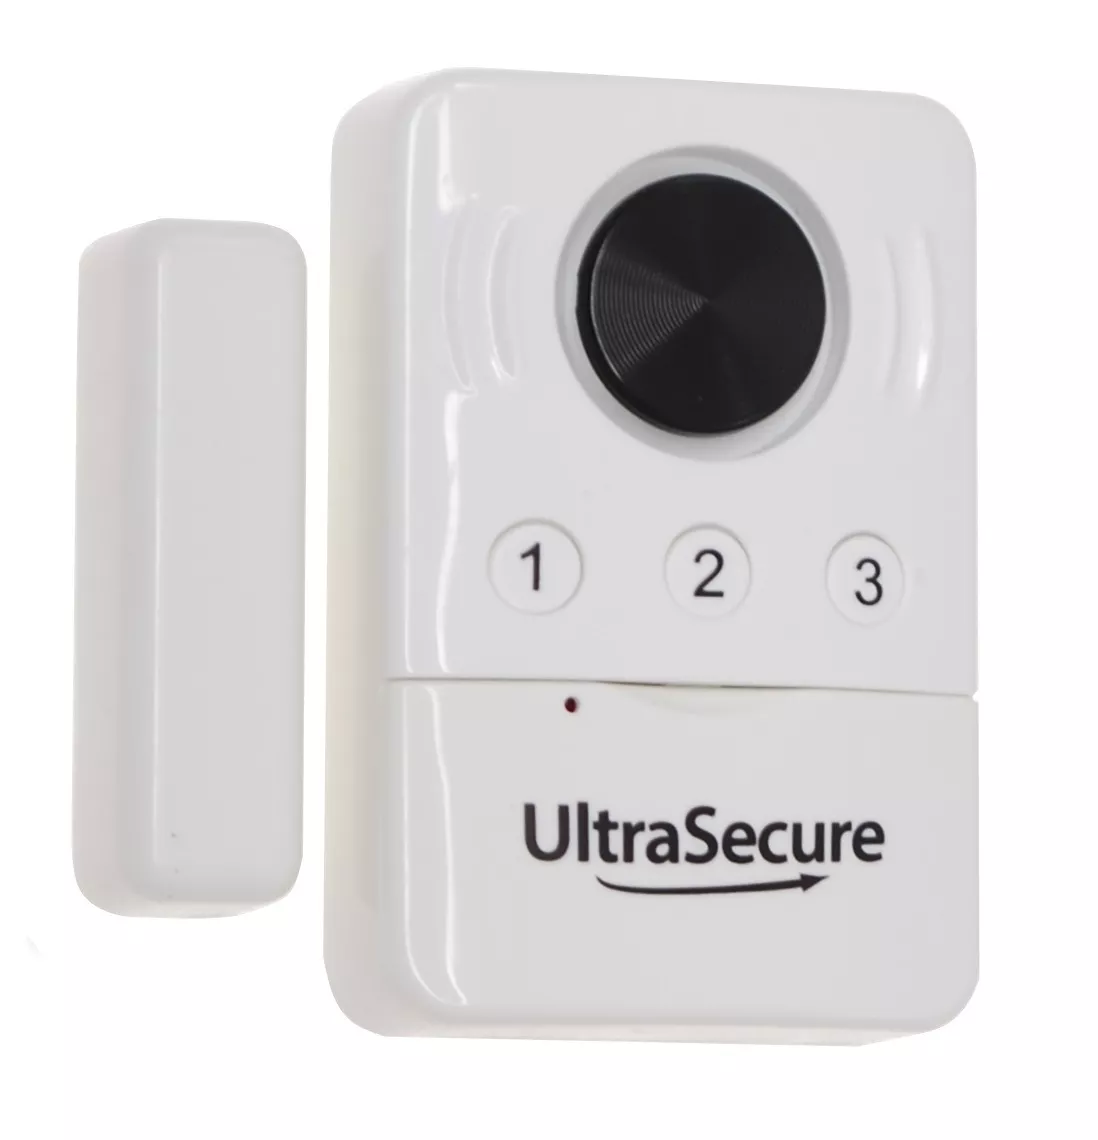 Porte Capteur Safe alarme analge fenêtre alarme türalarm avec télécommande sans fil